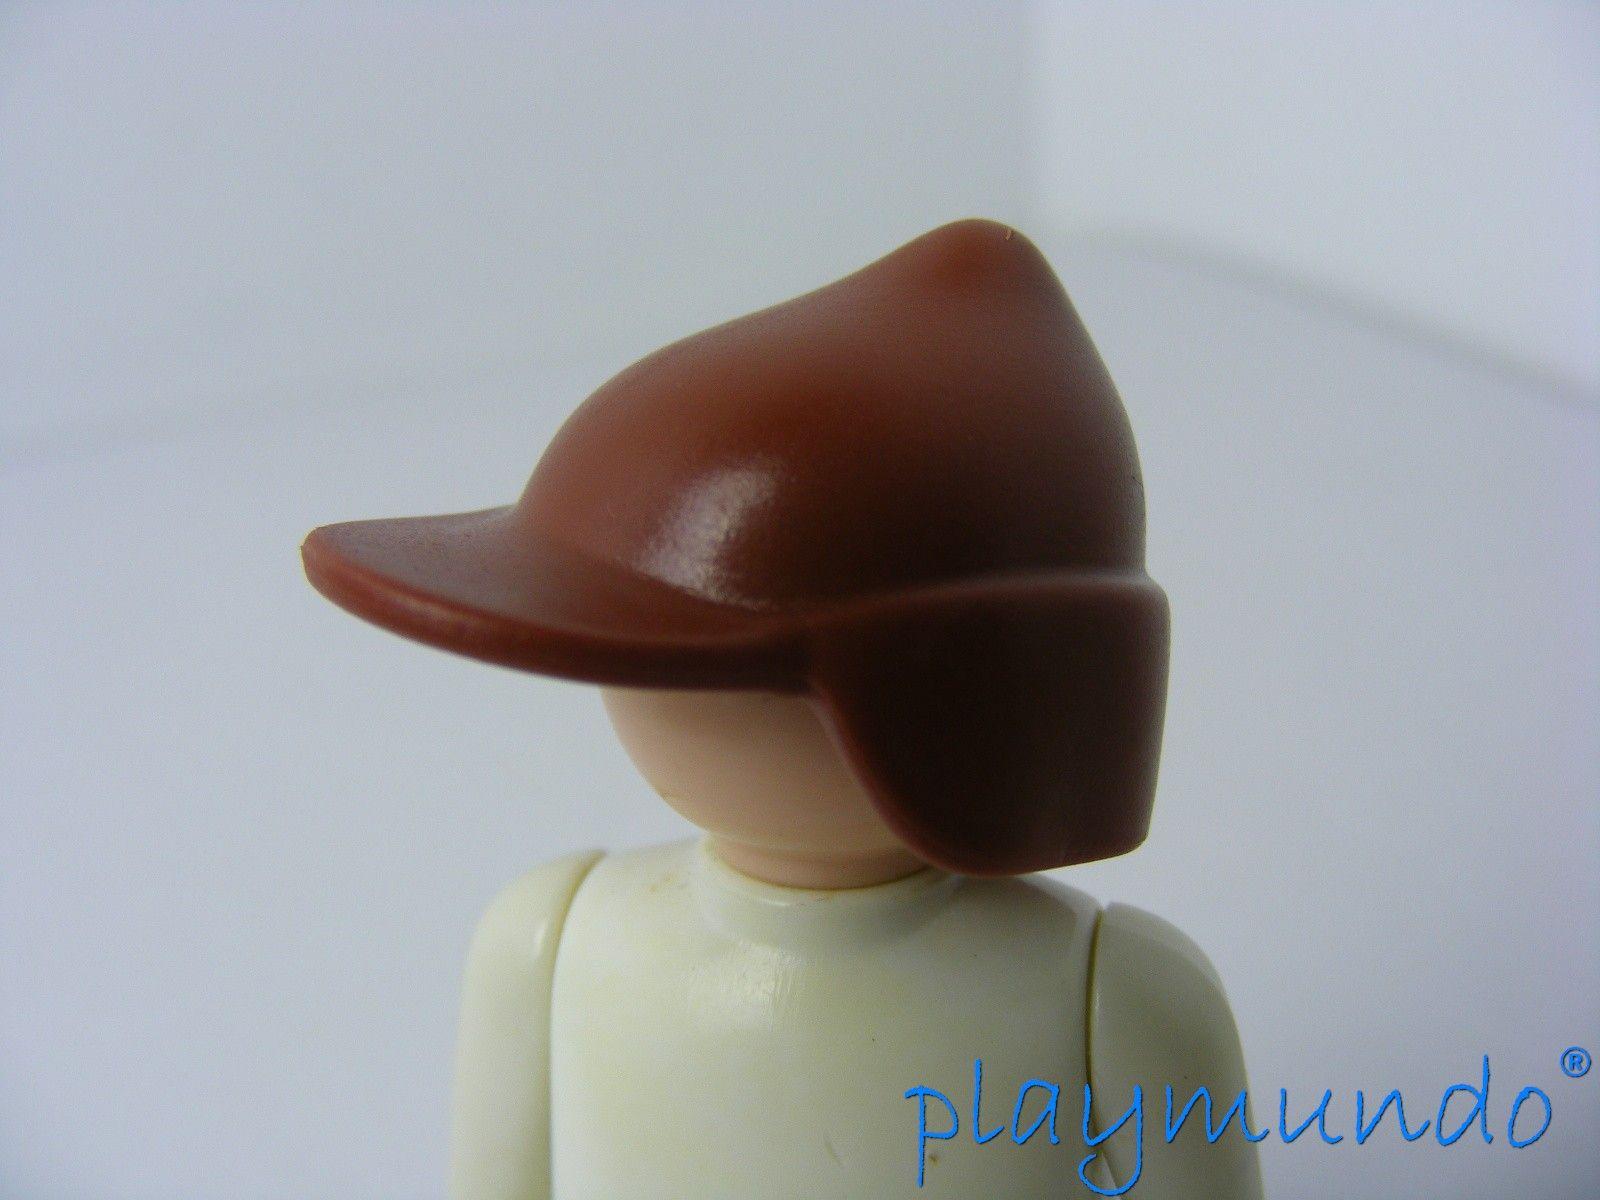 Playmobil sombrero gorra para adultos personaje llévense ciudad vida m-1438 